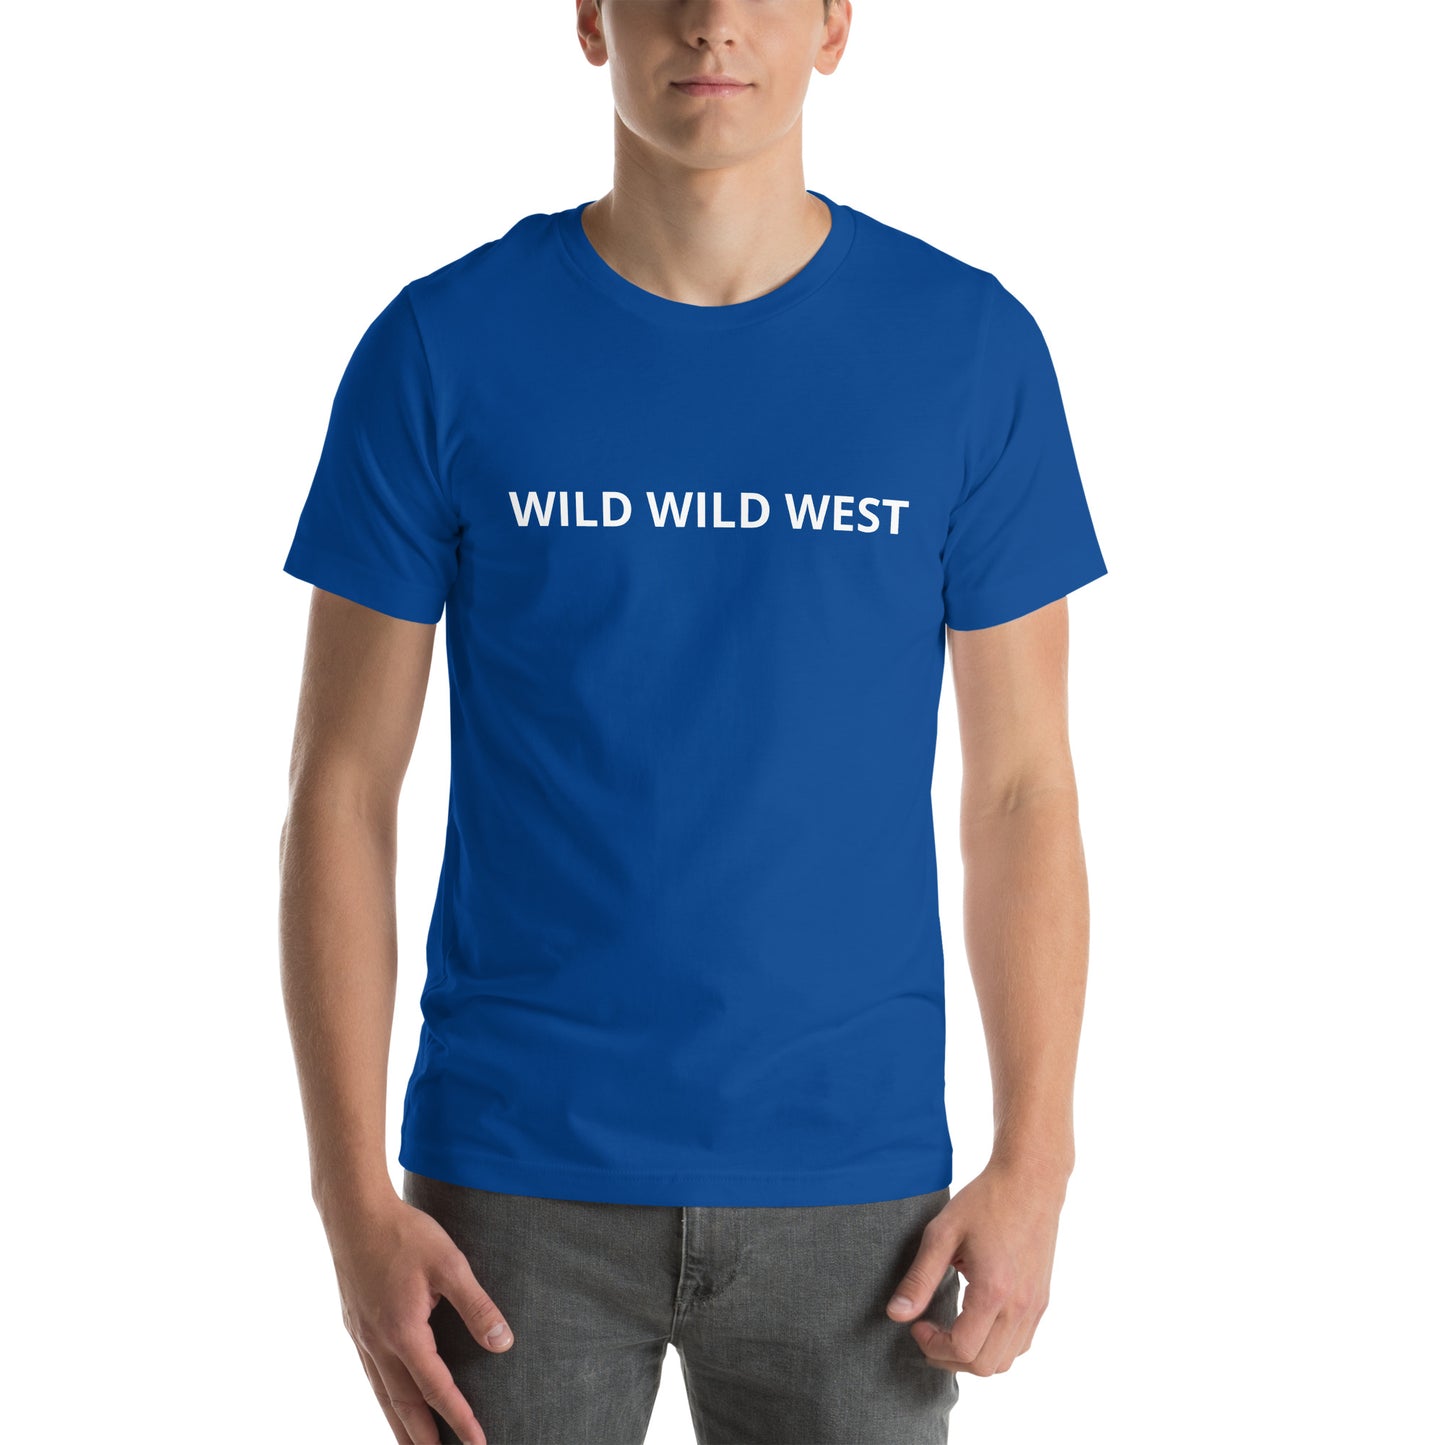 WILD WILD WEST Unisex t-shirt